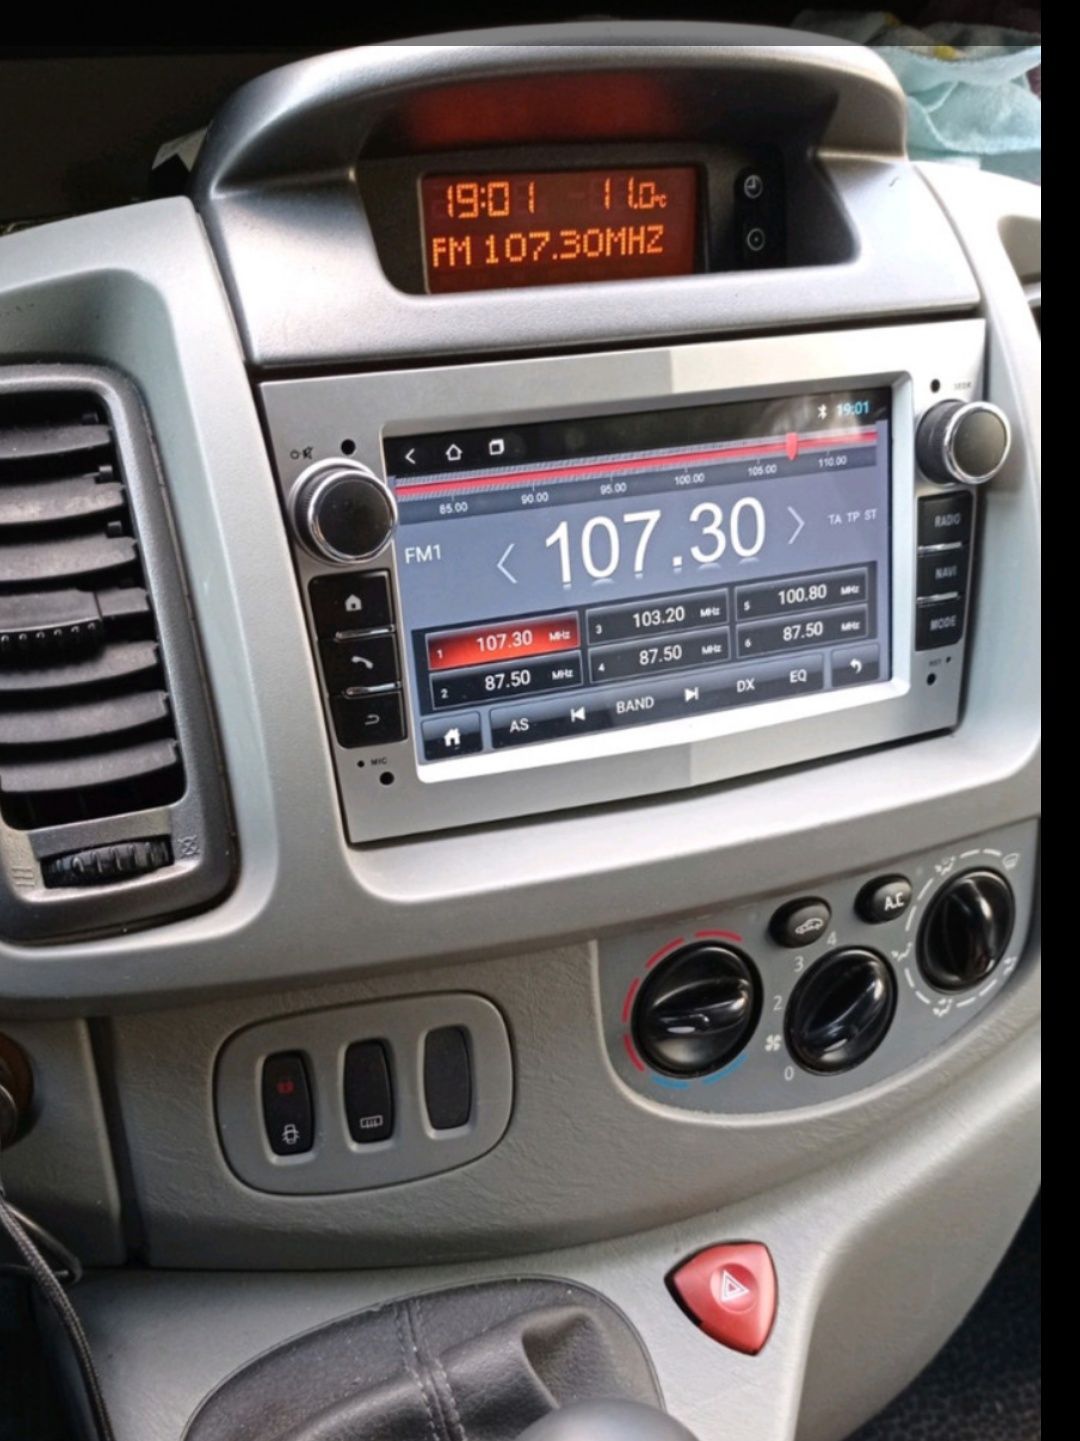 Штатная Андроид магнитола Opel Vivaro, Renault Traffic с экраном 10 дю